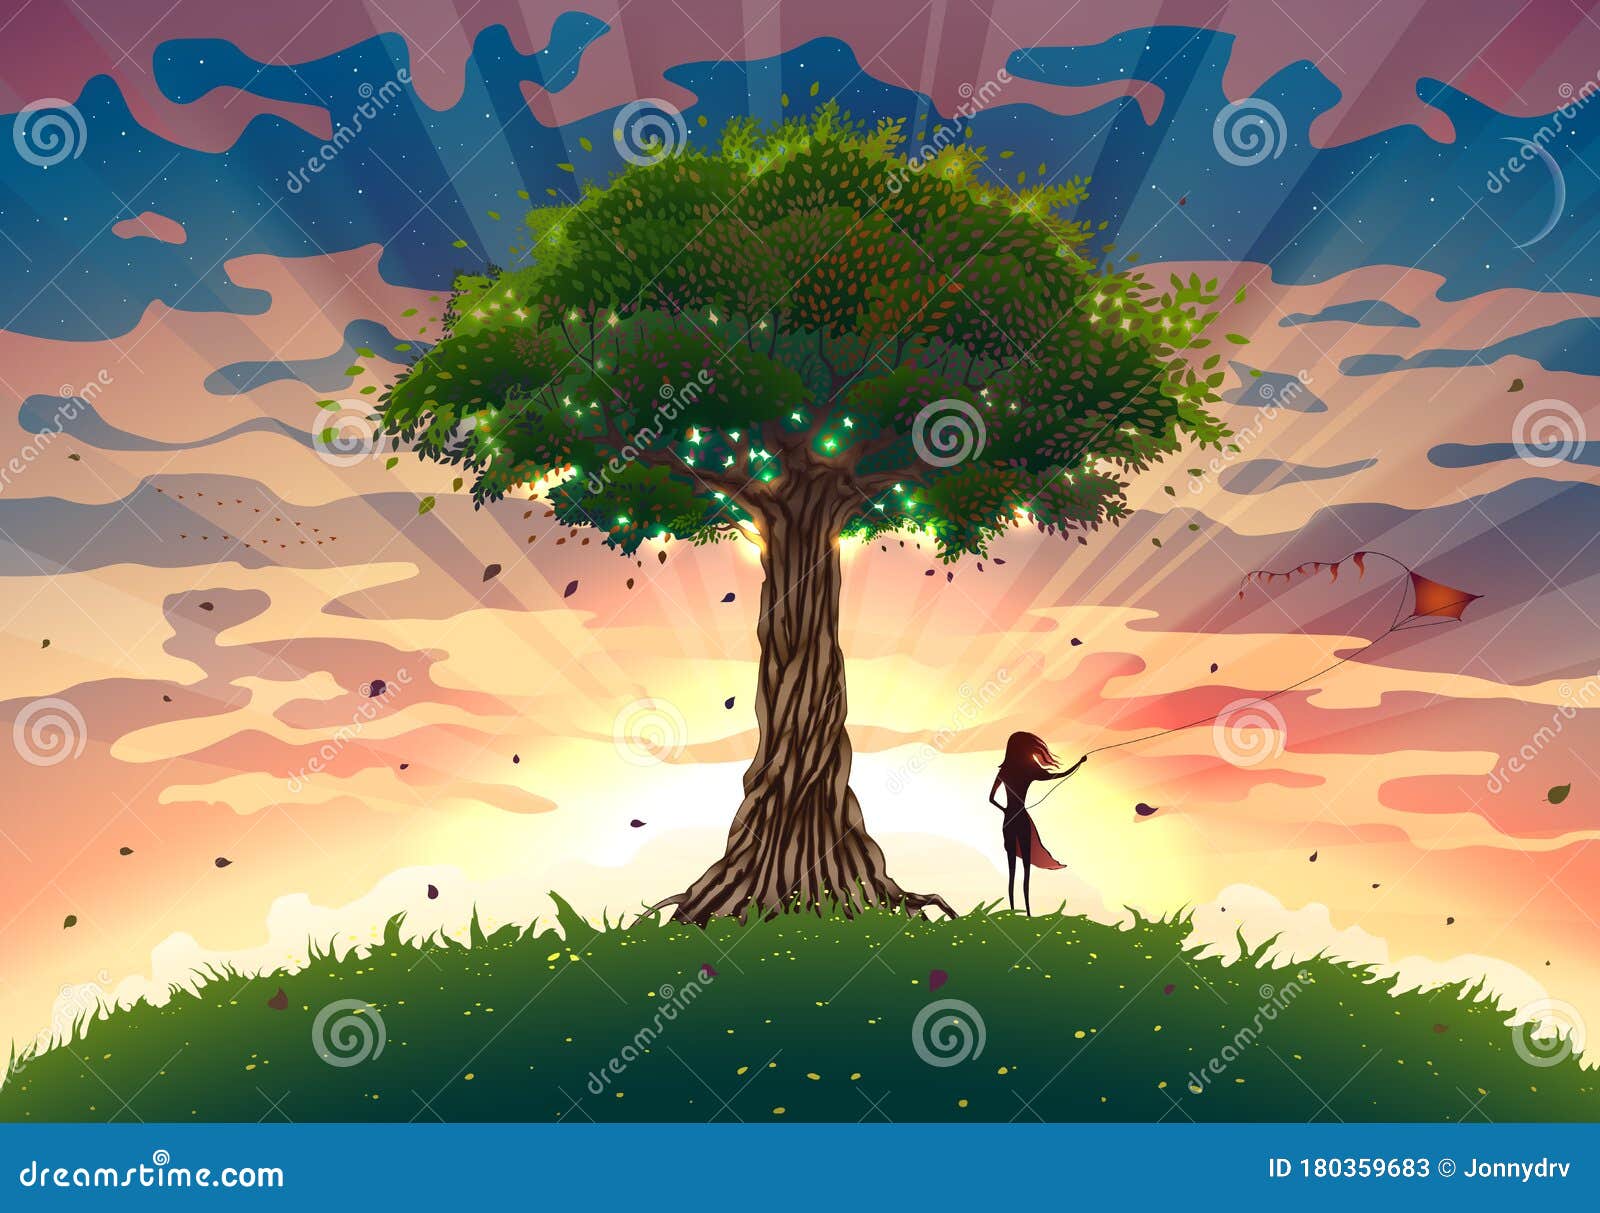 幻想的夕阳景观 树和女孩放风筝 夏日的日出图画 光束 美丽的天空向量例证 插画包括有天空 绿色